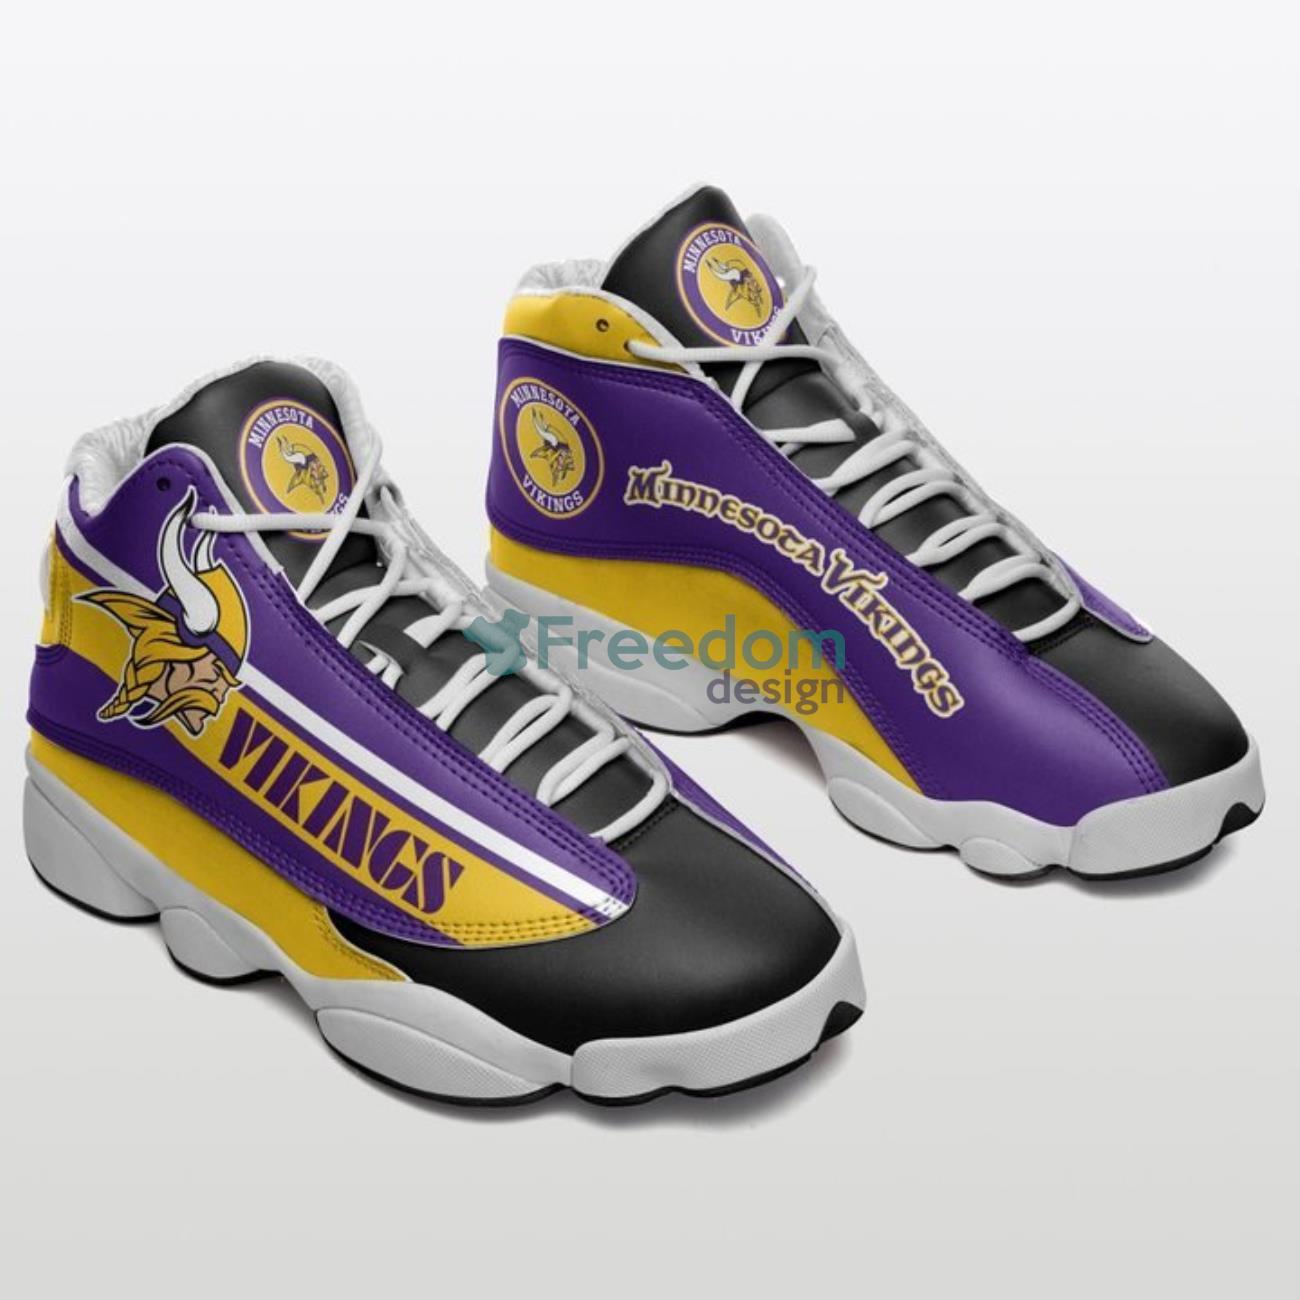 Minnesota Vikings Team Air Jordan 13 Sneaker Shoes For Fans Gift